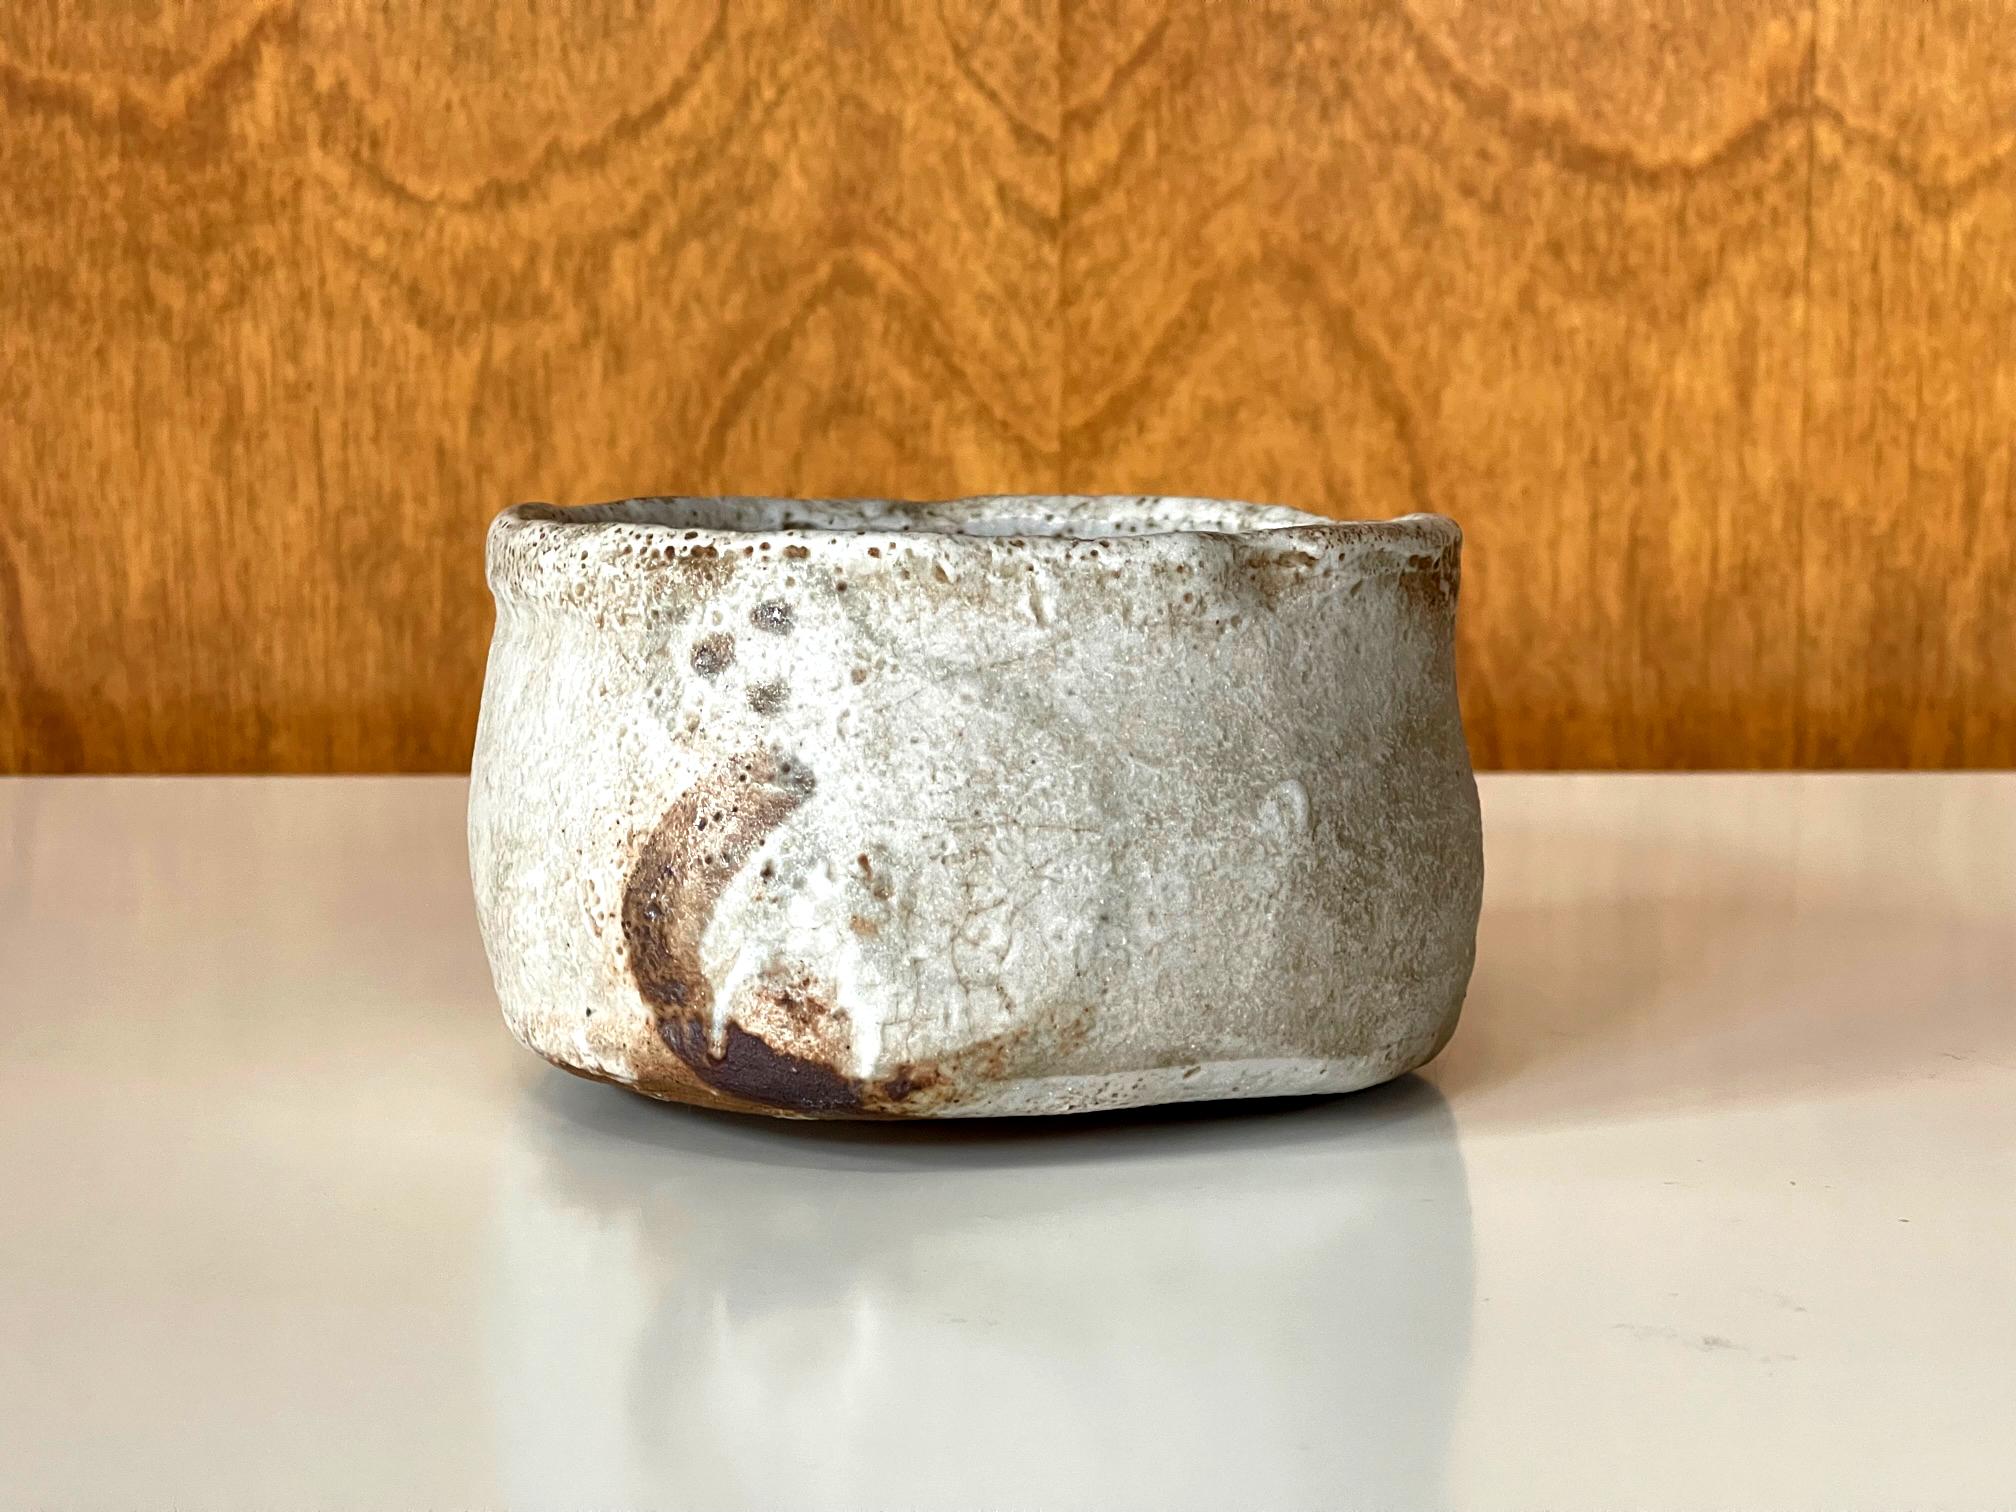 Im Angebot ist eine japanische Teeschale aus Keramik (Chawan), die bei der traditionellen Chado-Zeremonie verwendet wird. Die Schale wurde in Klompenform mit einem extrem niedrig geschliffenen Ringfuß getöpfert. Dank seiner Größe und harmonischen